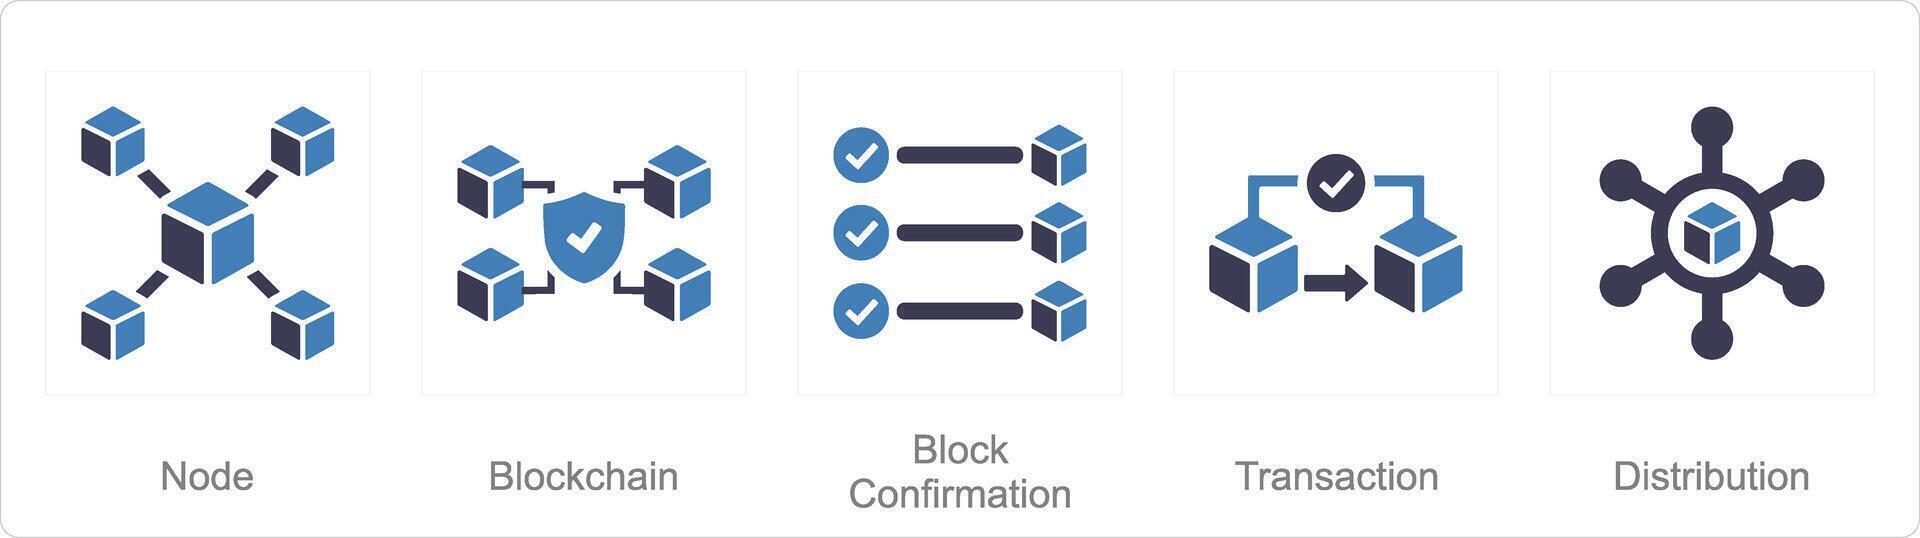 en uppsättning av 5 blockchain ikoner som nod, blockchain, blockera Bekräftelse vektor